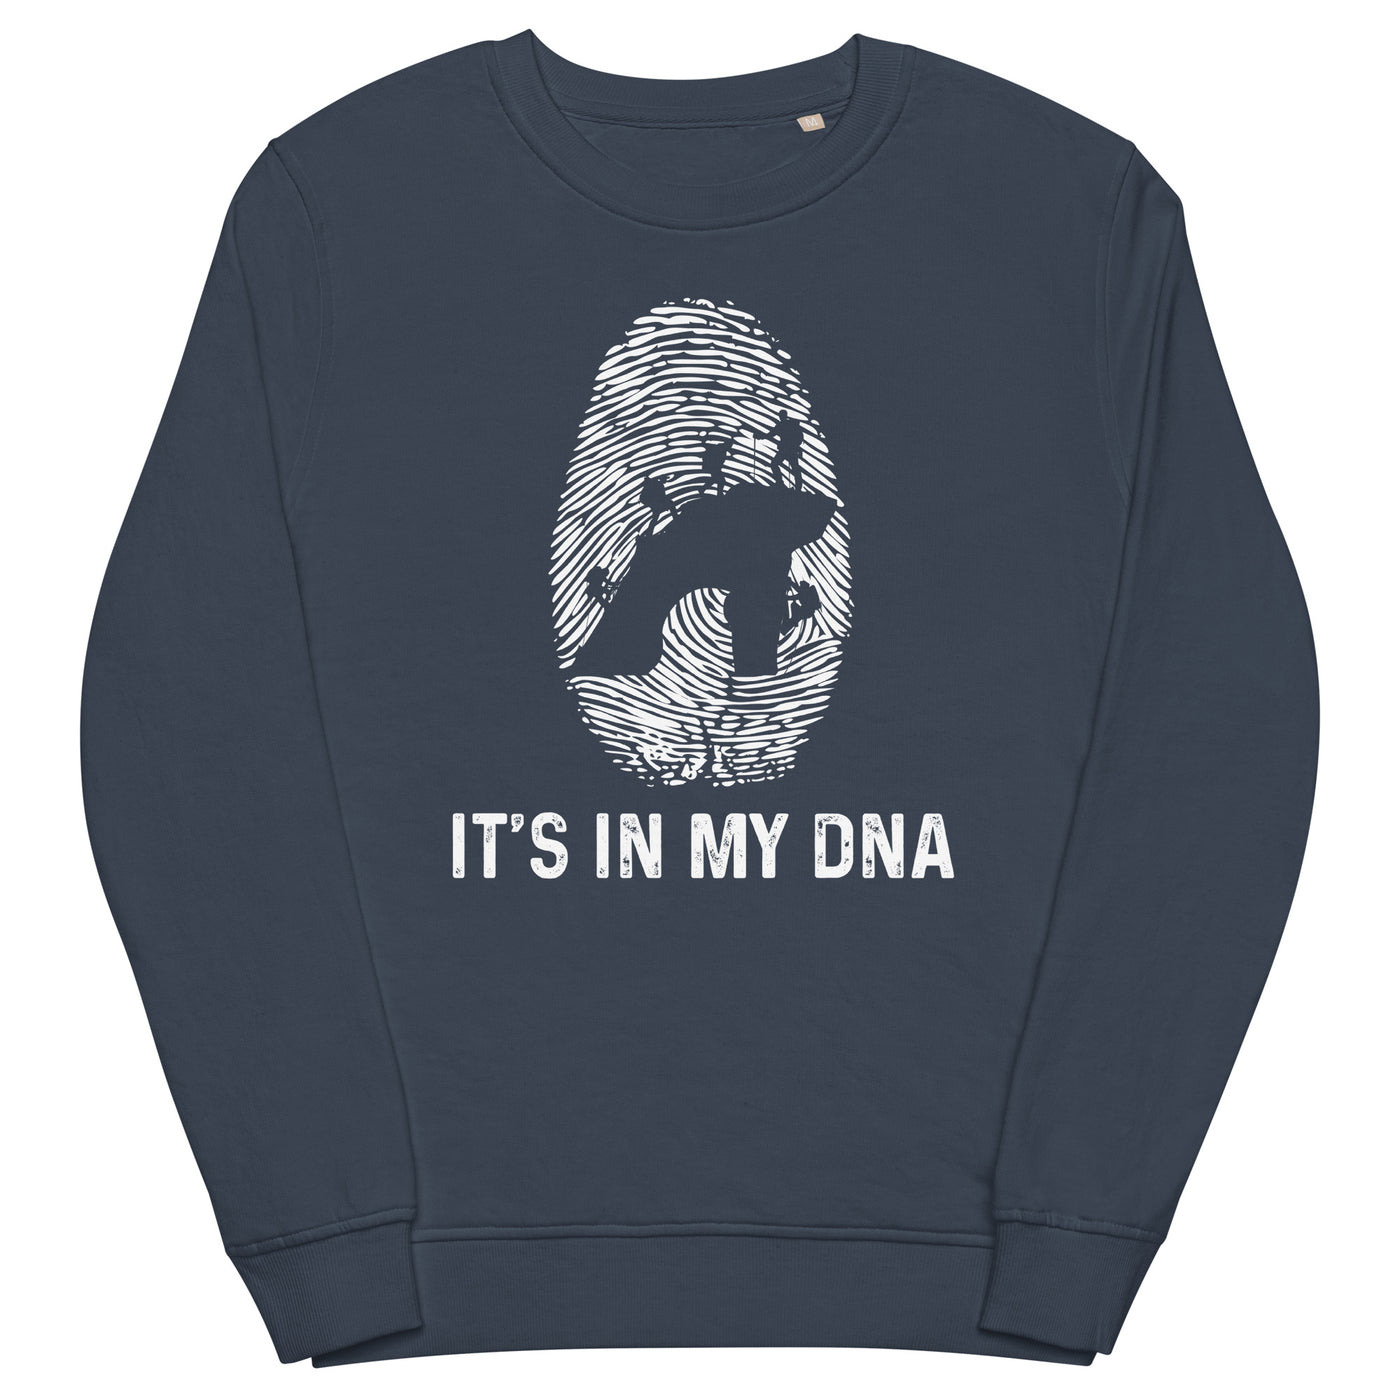 It's In My DNA - Unisex Premium Organic Sweatshirt klettern xxx yyy zzz French Navy